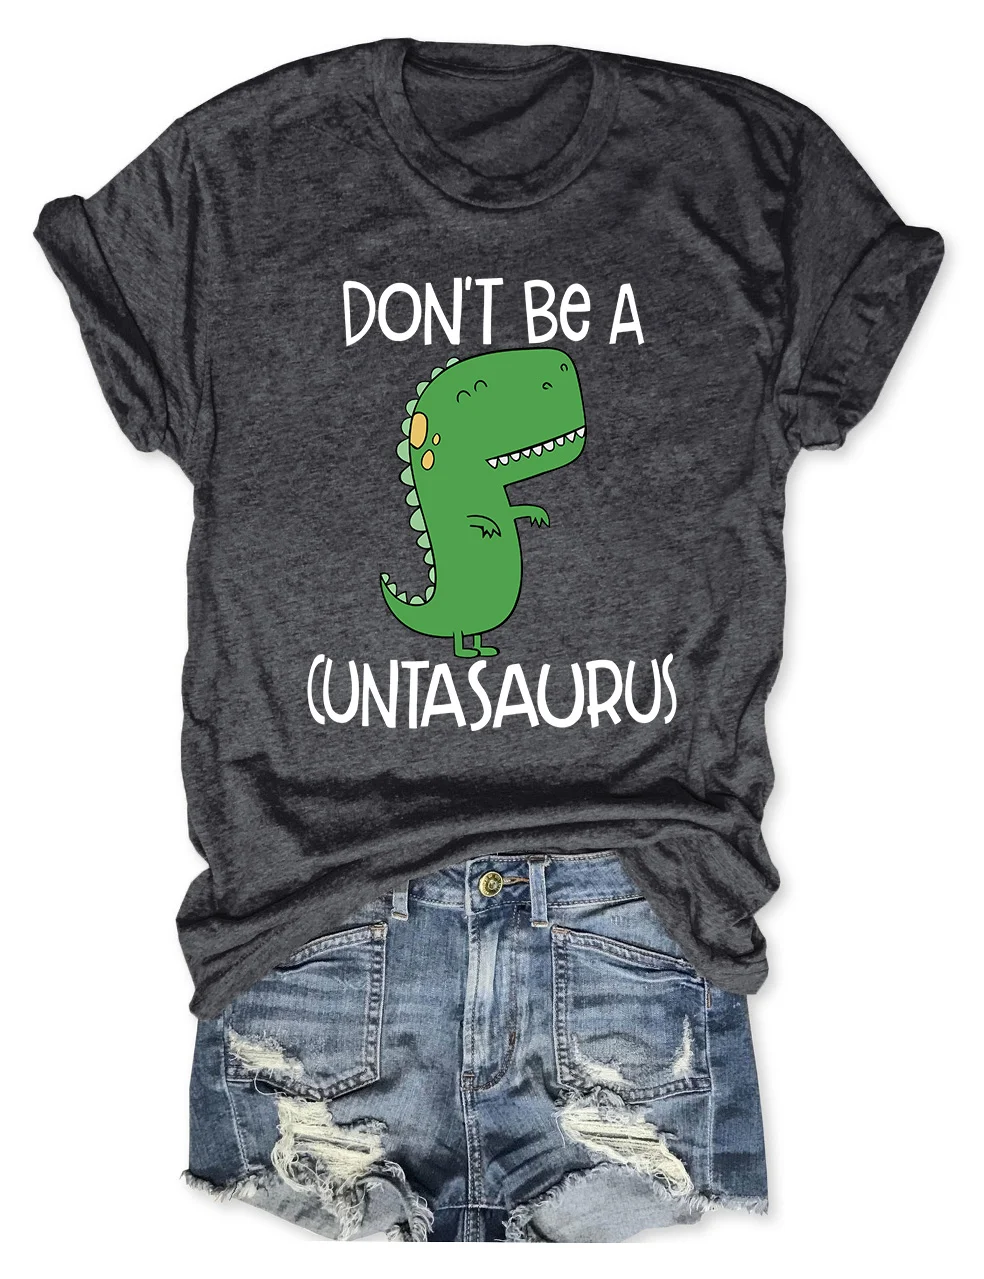 Don't Be A Cuntasaurus/Twatopotamus T-Shirt